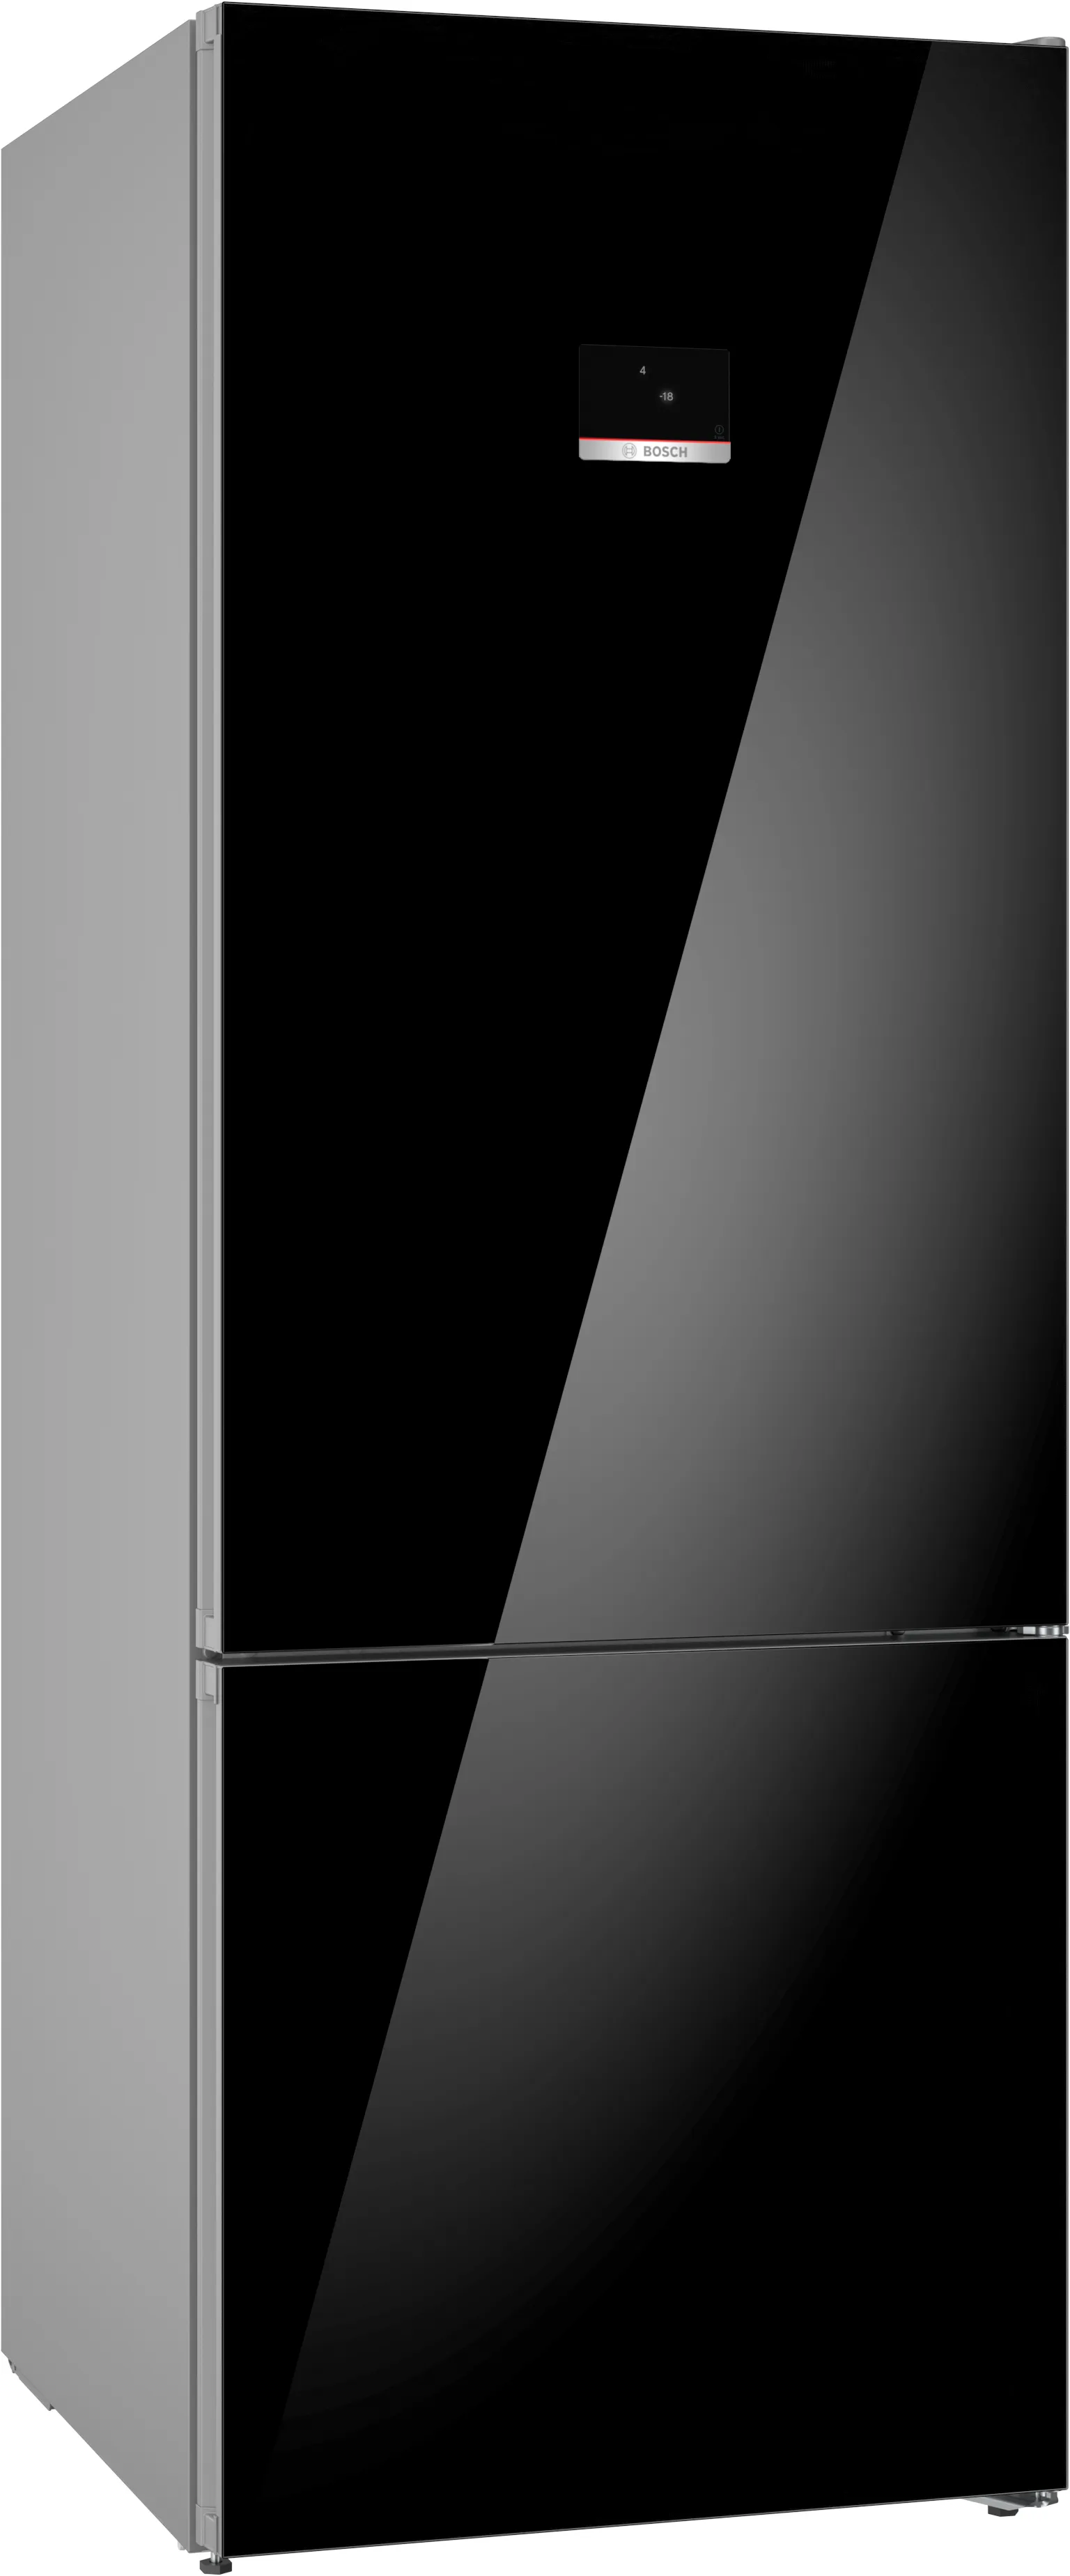 Series 6 Freestanding Fridge-freezer (Bottom freezer), glass door 193 x 70 cm Black 